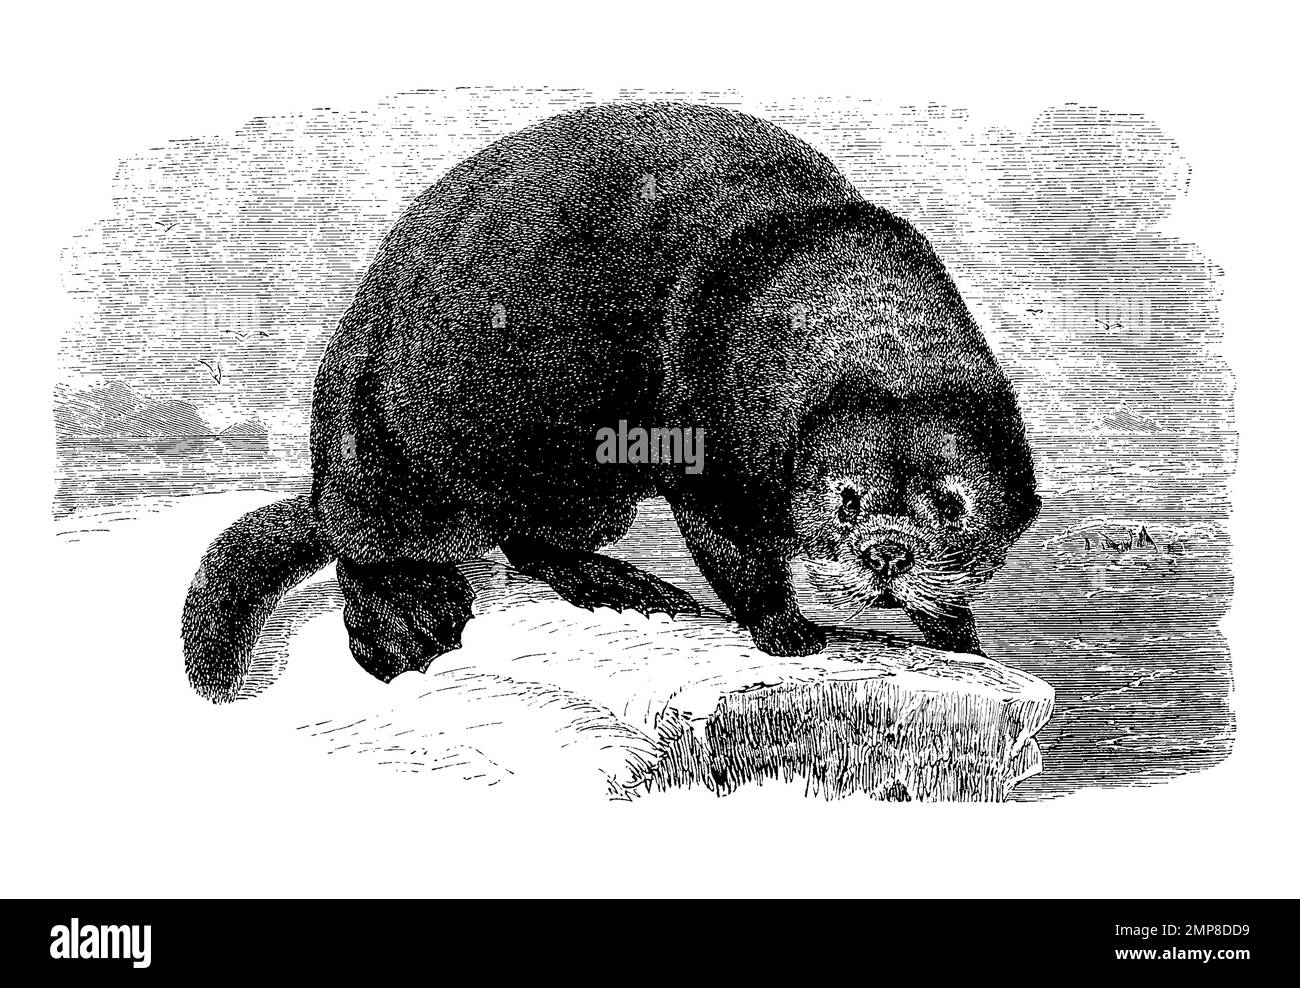 Seeotter, Kalan oder Meerotter, Enhydra lutris, eine Raubtierart aus der Unterfamilie der Otter, digital restaurierte Reproduktion einer Originalvorlage aus dem 19. Jahrhundert, genaues Originaldatum nicht bekannt Stock Photo